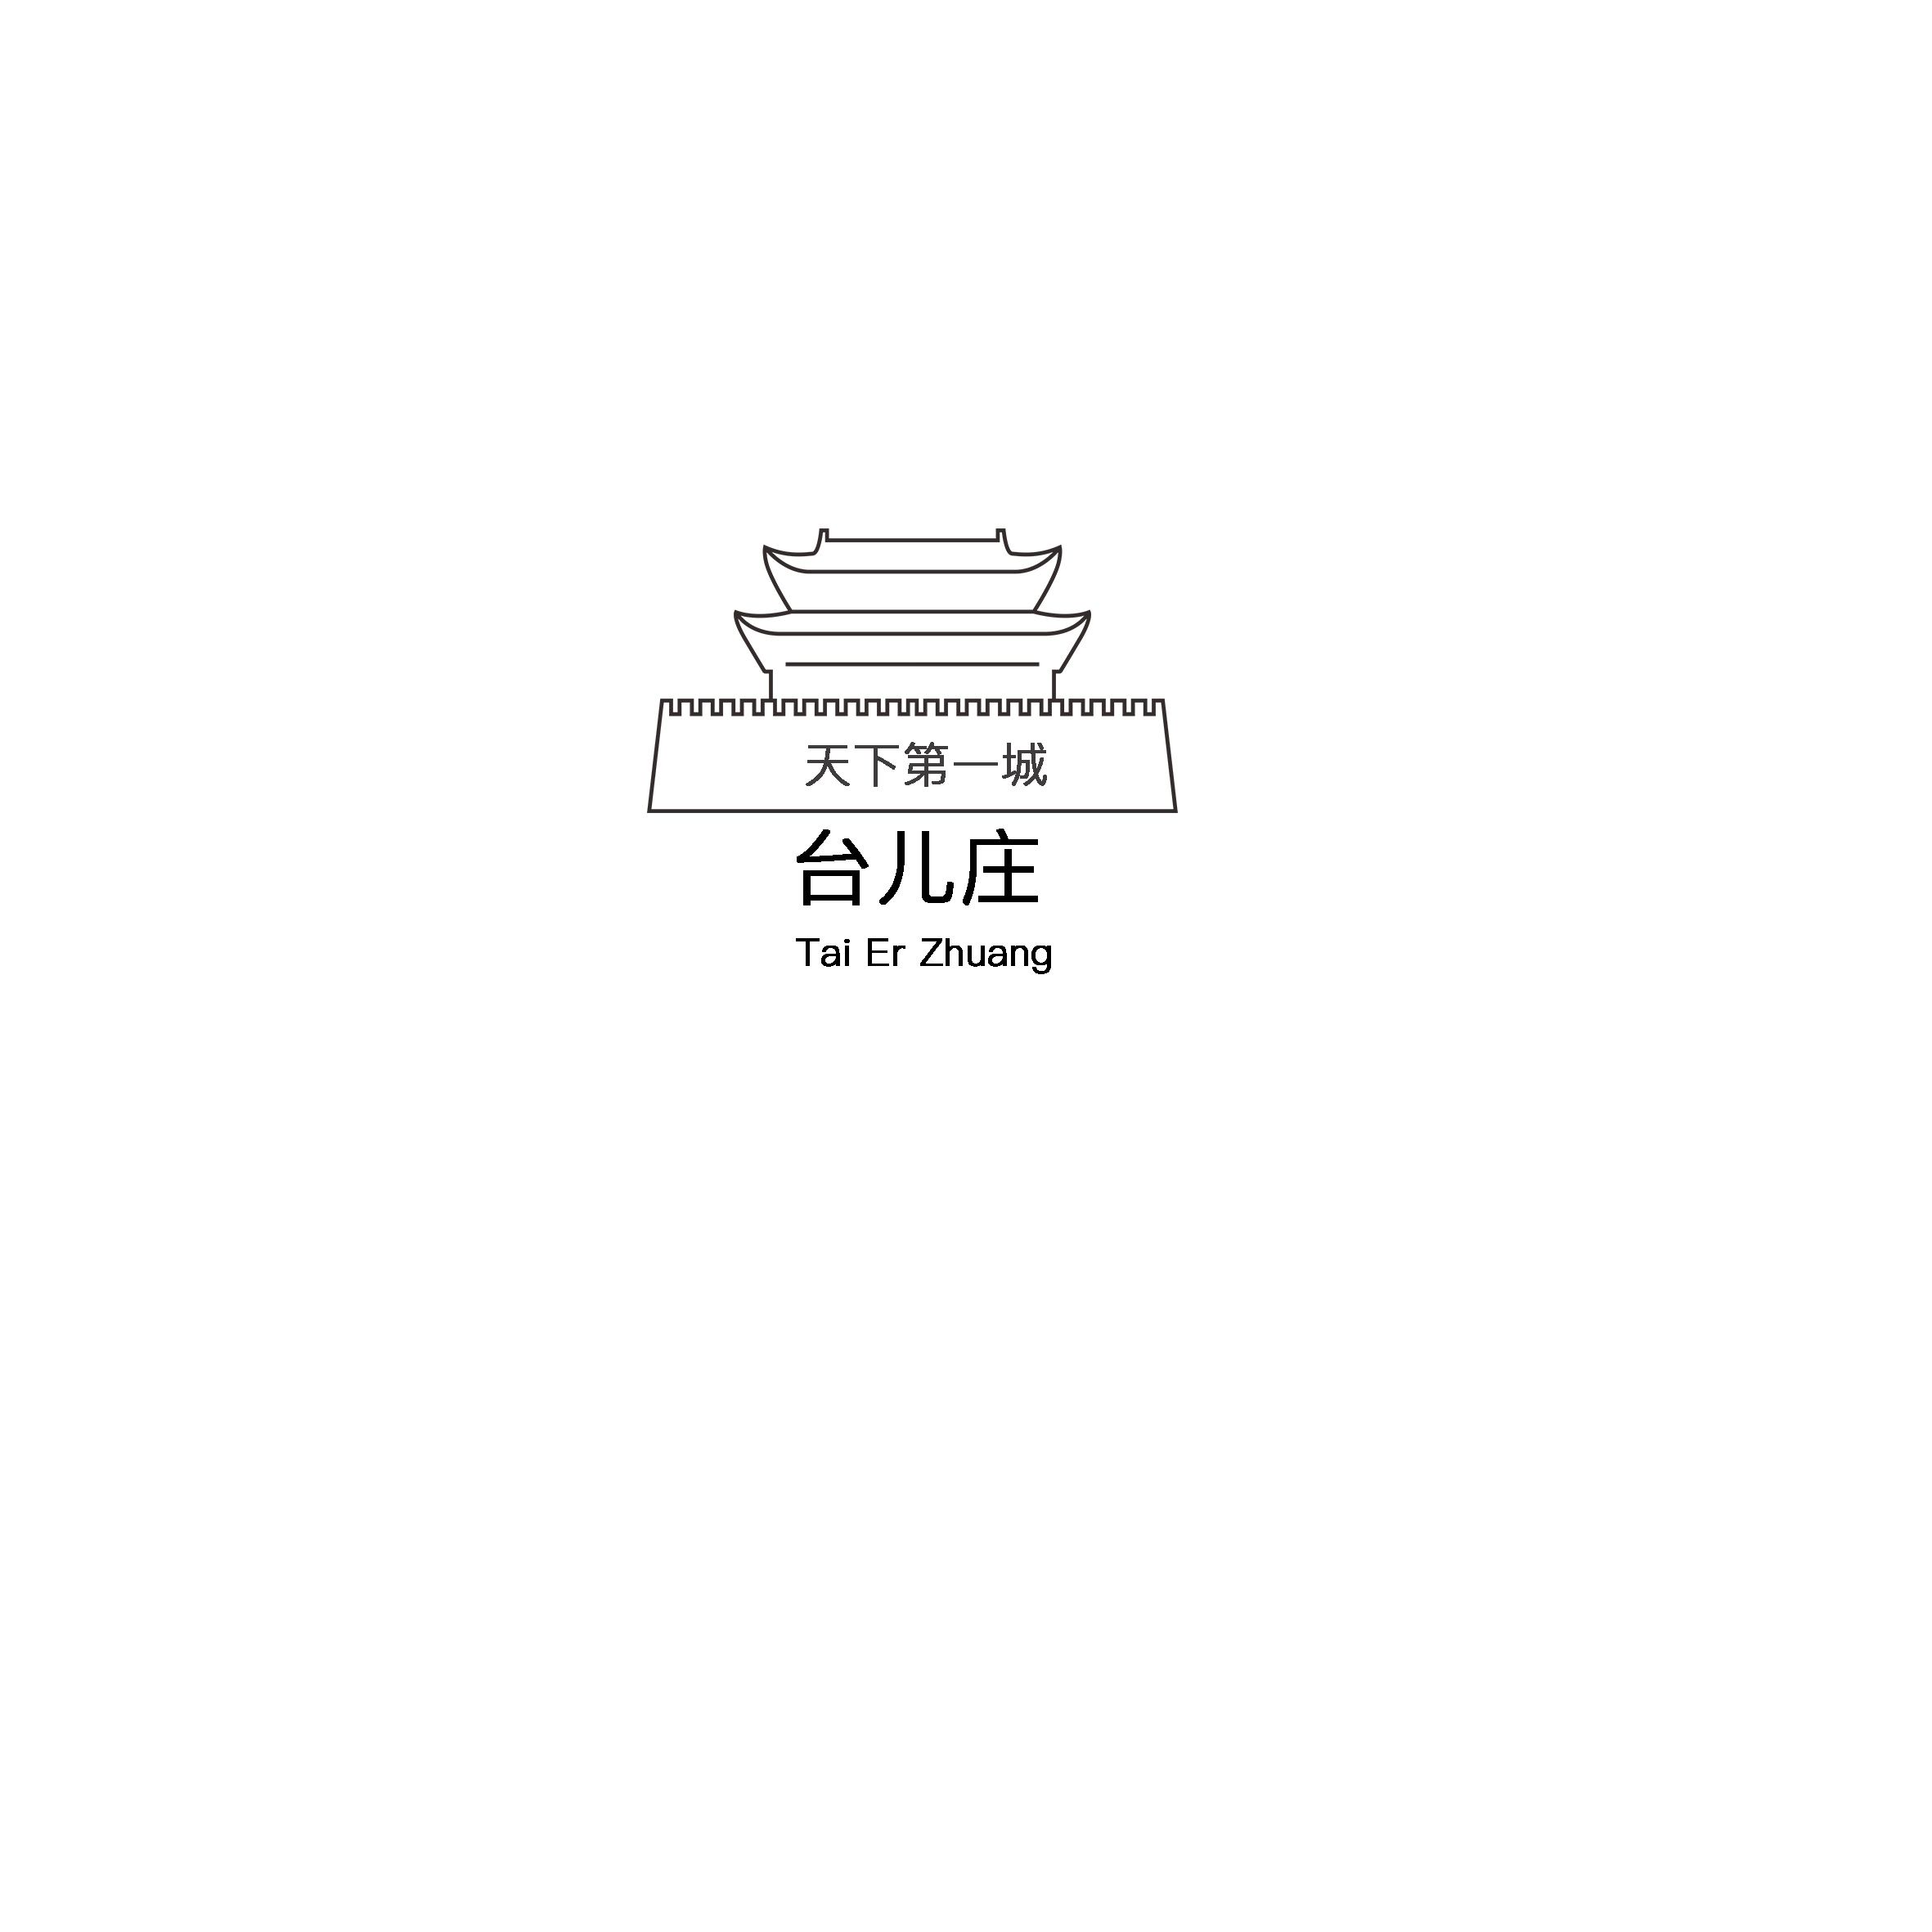 台儿庄logo图片